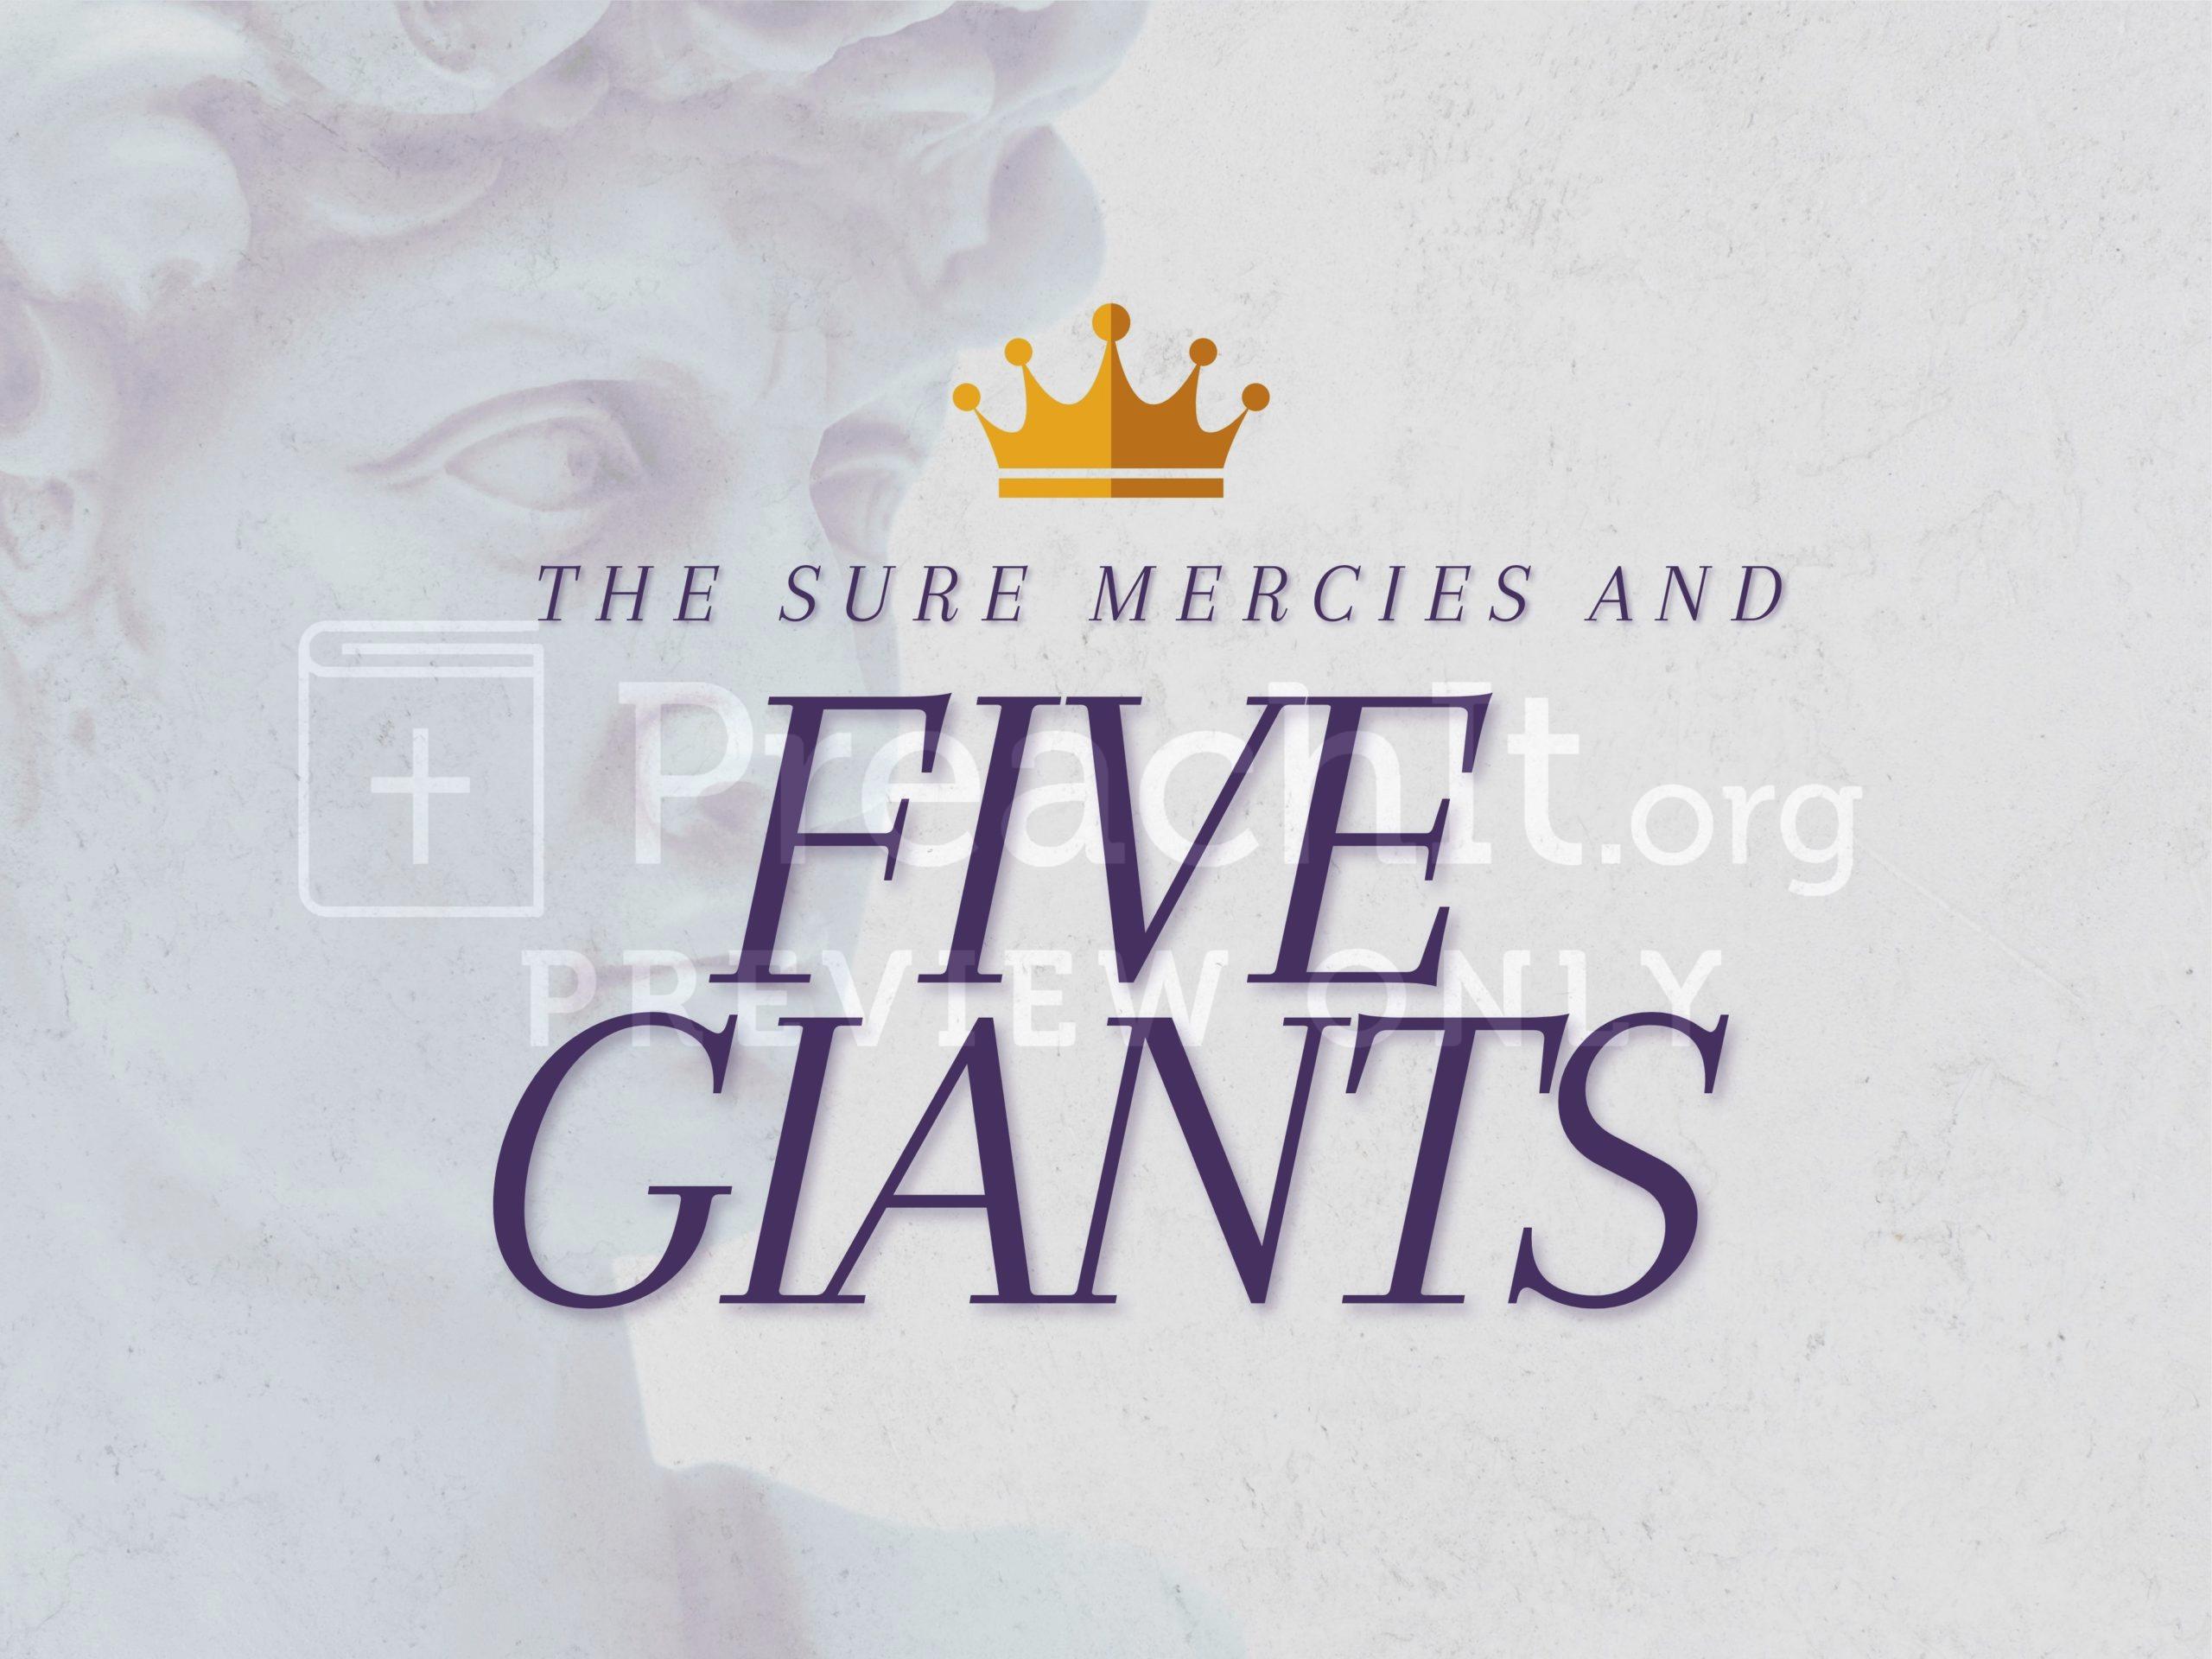 Part 3: Sure Mercies And Five Giants